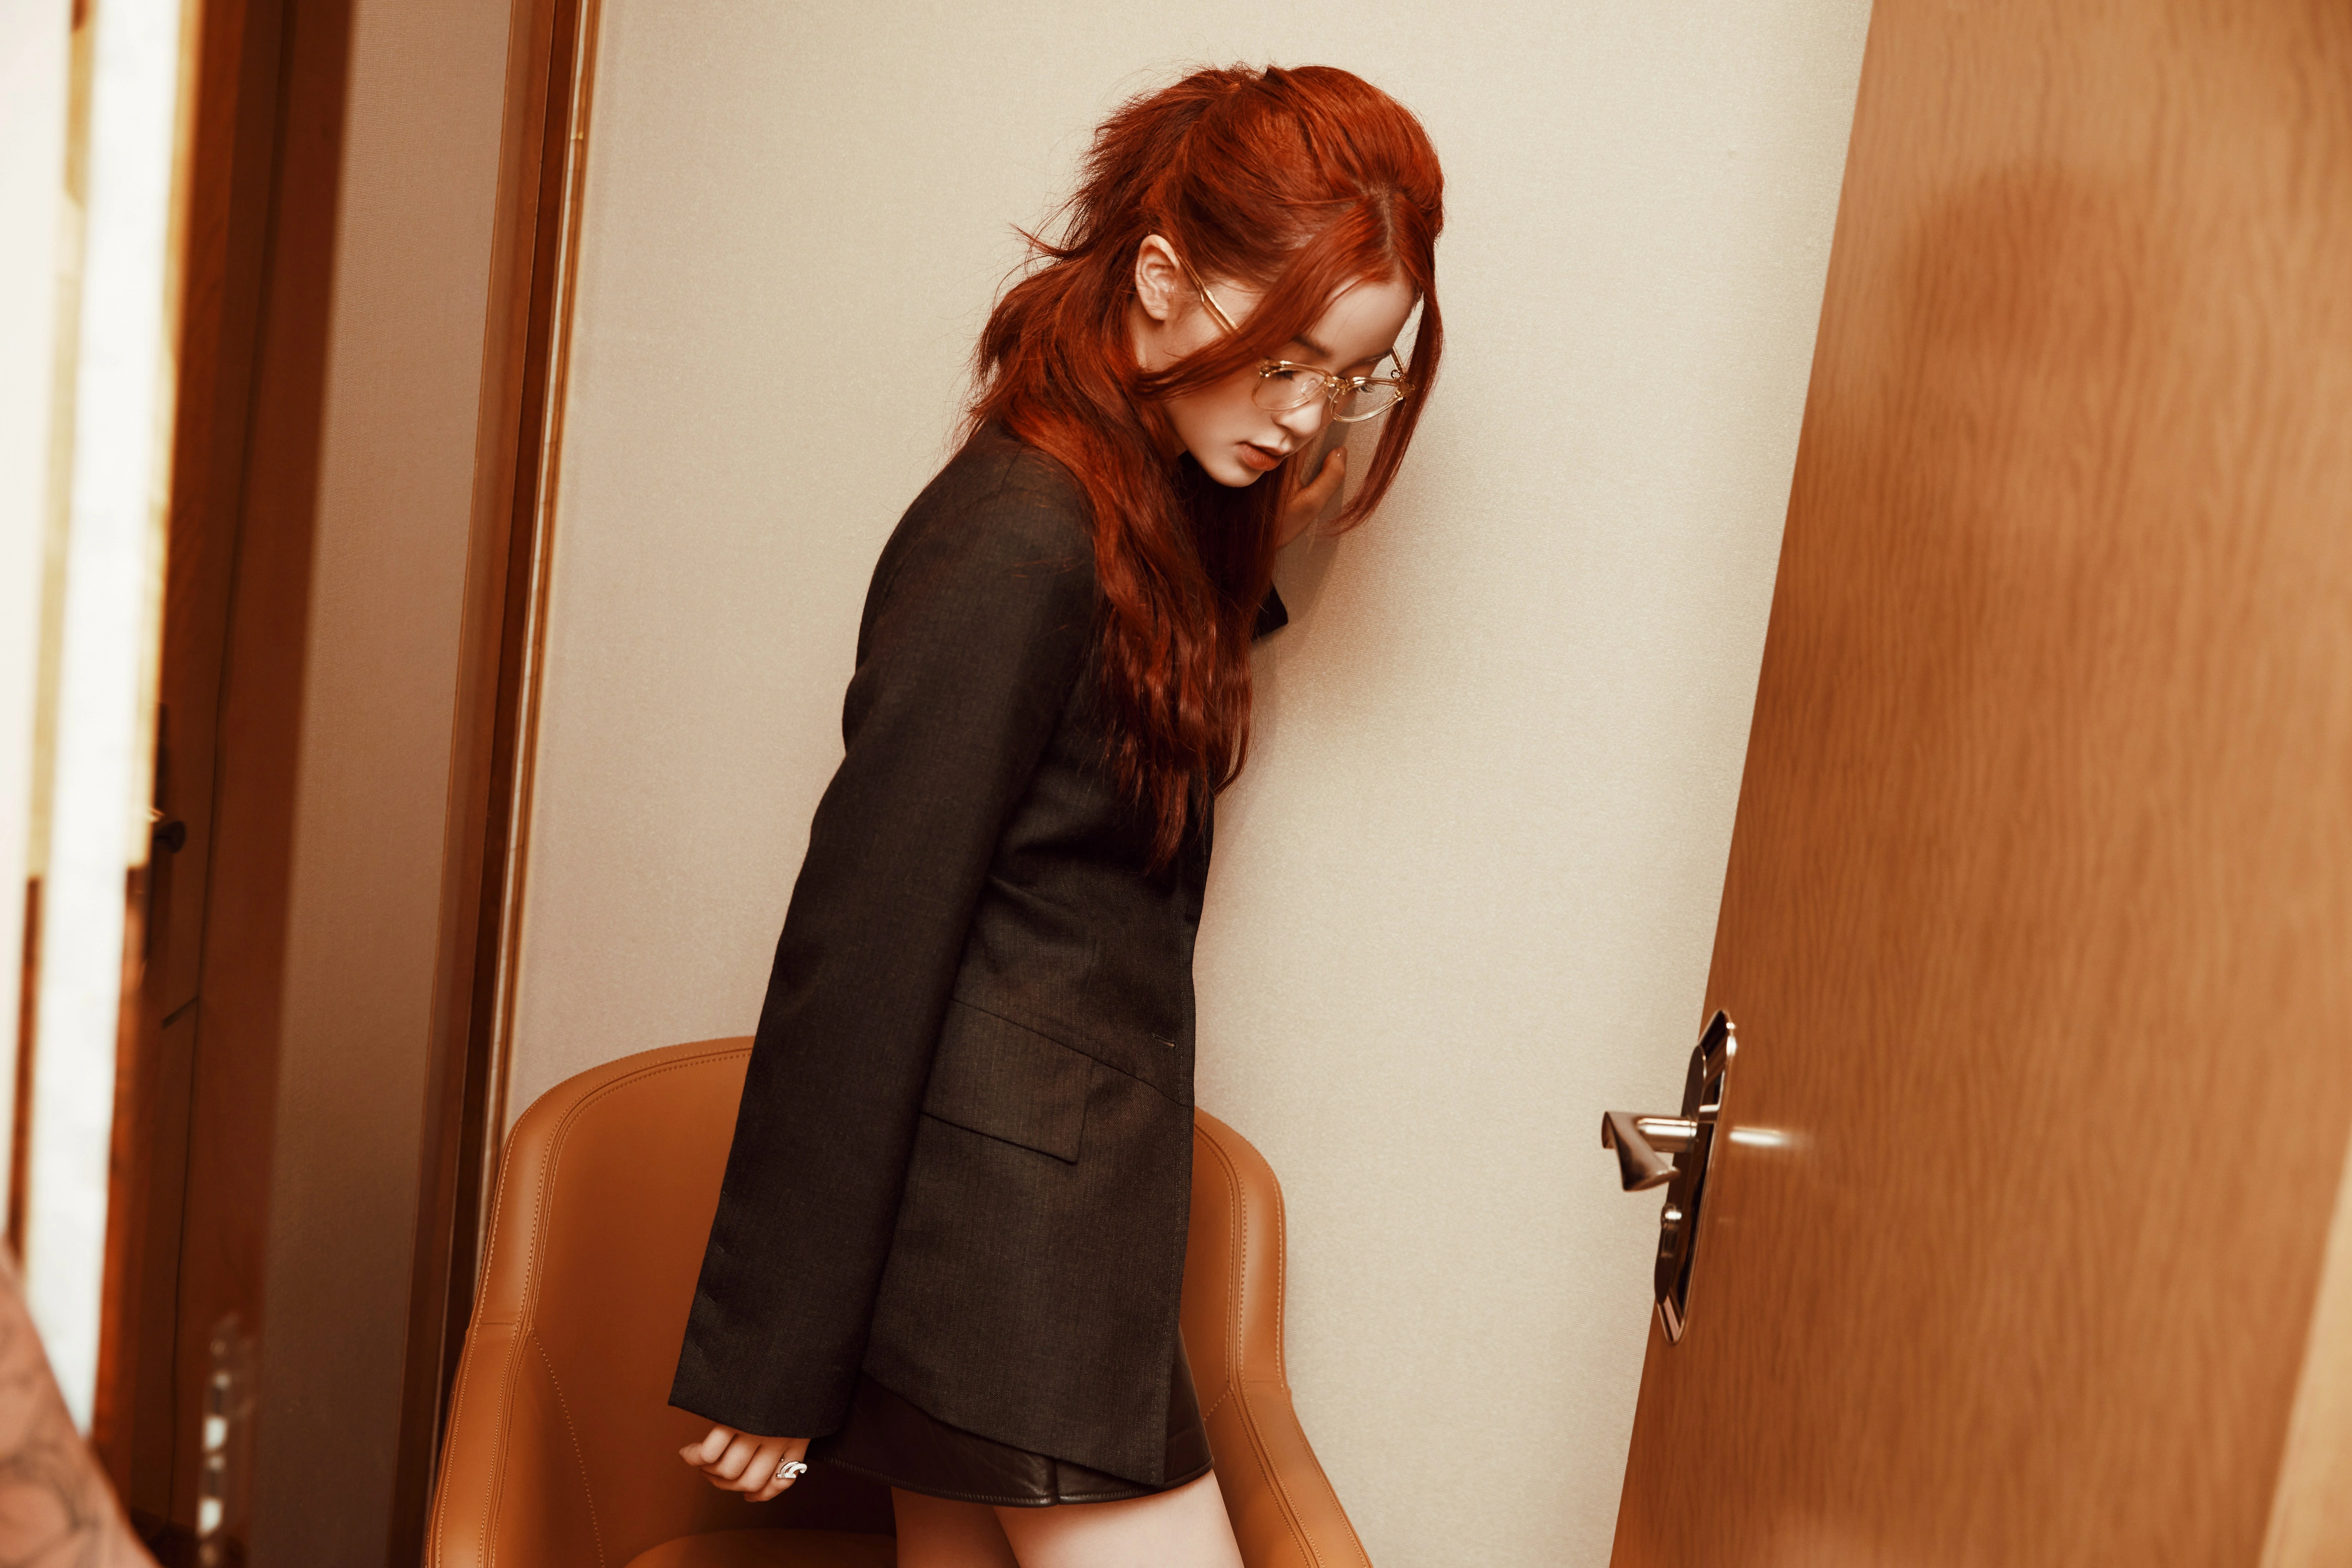 欧阳娜娜限定红发女孩造型释出 着西装搭配眼镜甜酷十足,4